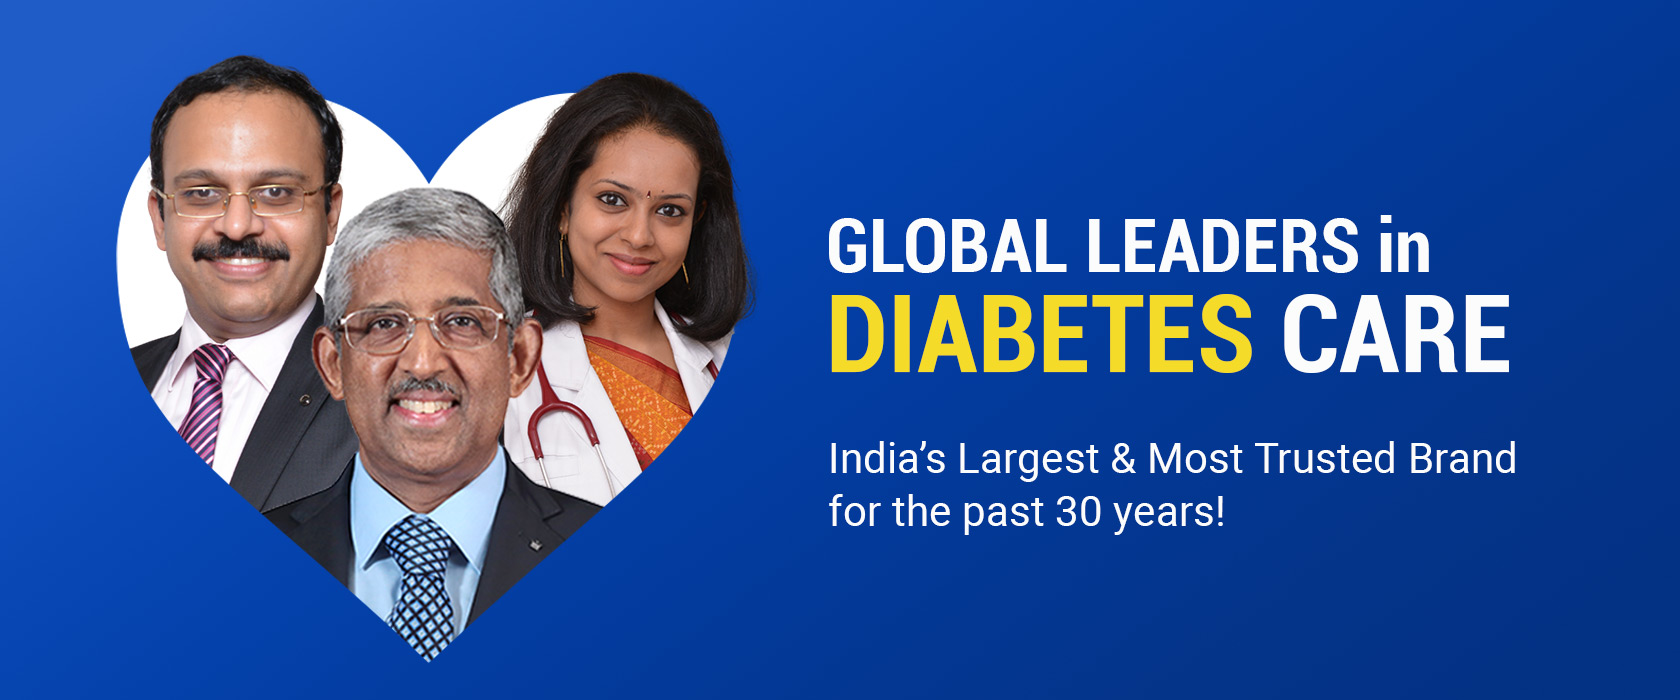 Global Leaders in Diabetes Care